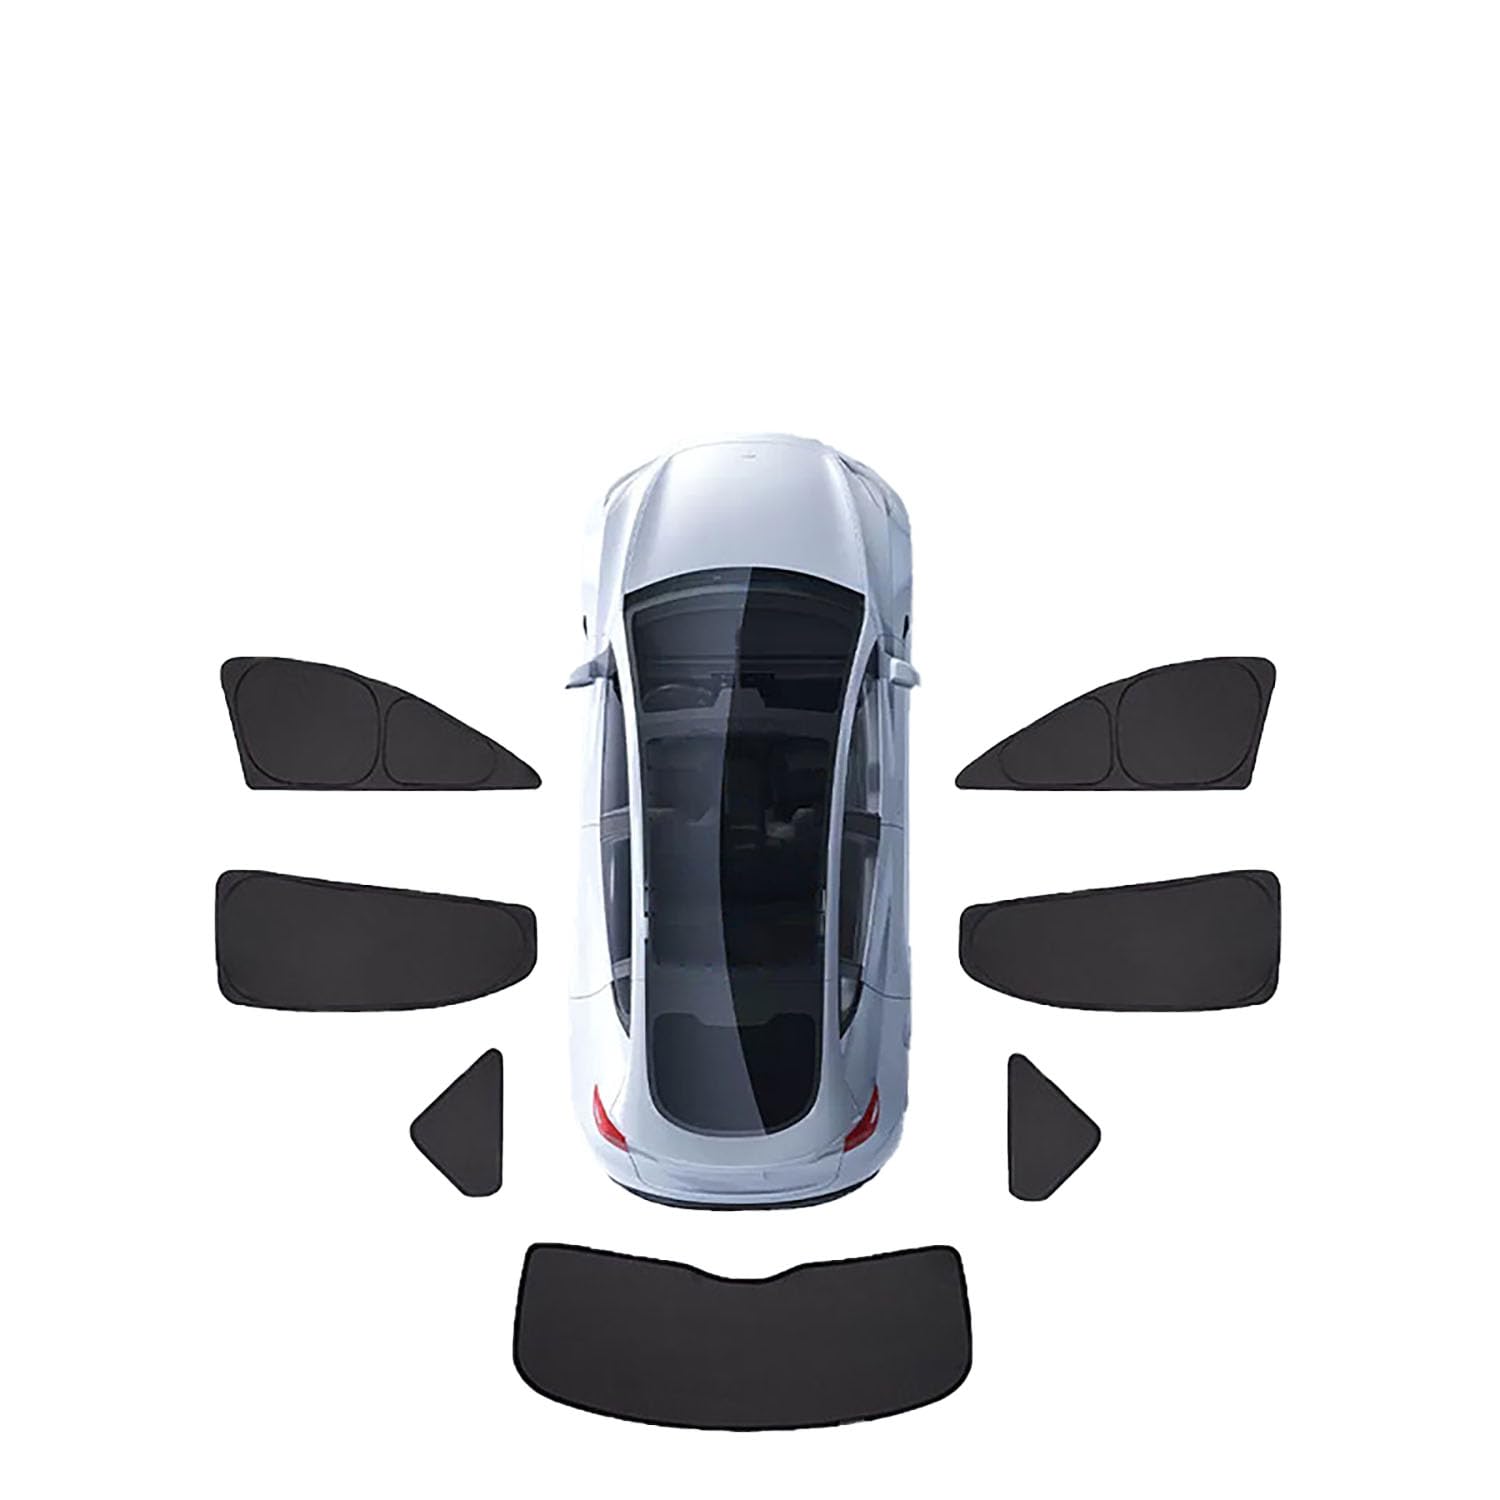 Auto-Sonnenschutz für VW Touran 2006-2015,Auto-Sonnenschutz UV-Schutz Wärmeisoliert Schutz der Privatsphäre ZubehöR,H-7 pieces for The whole car von LeiBaOF